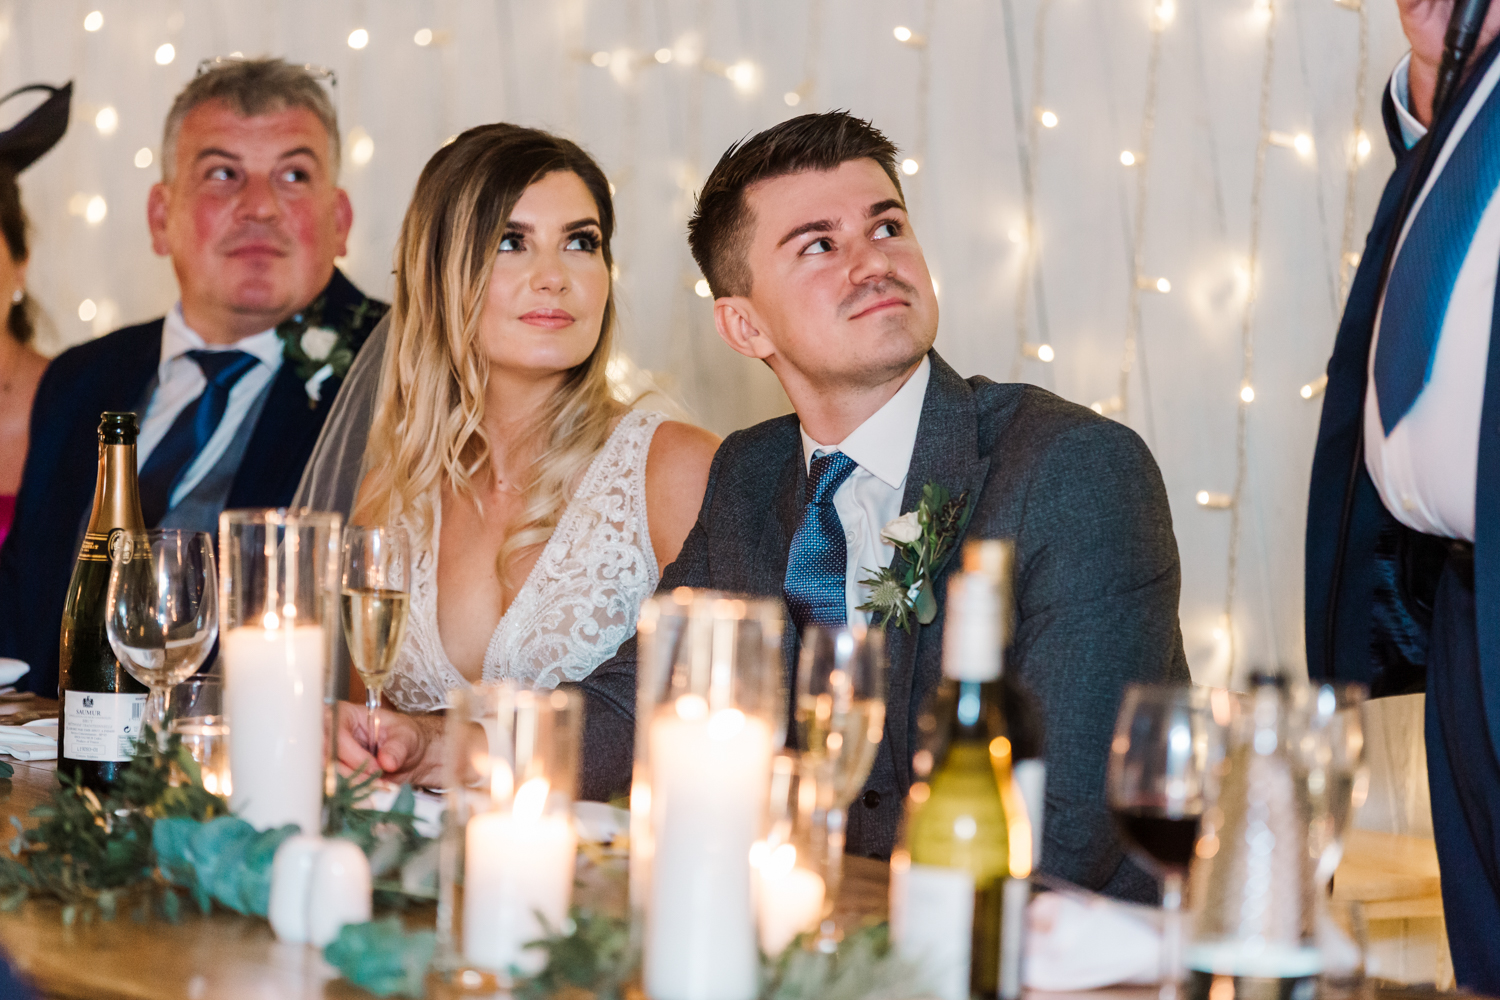 Wedding Photographers Leeds